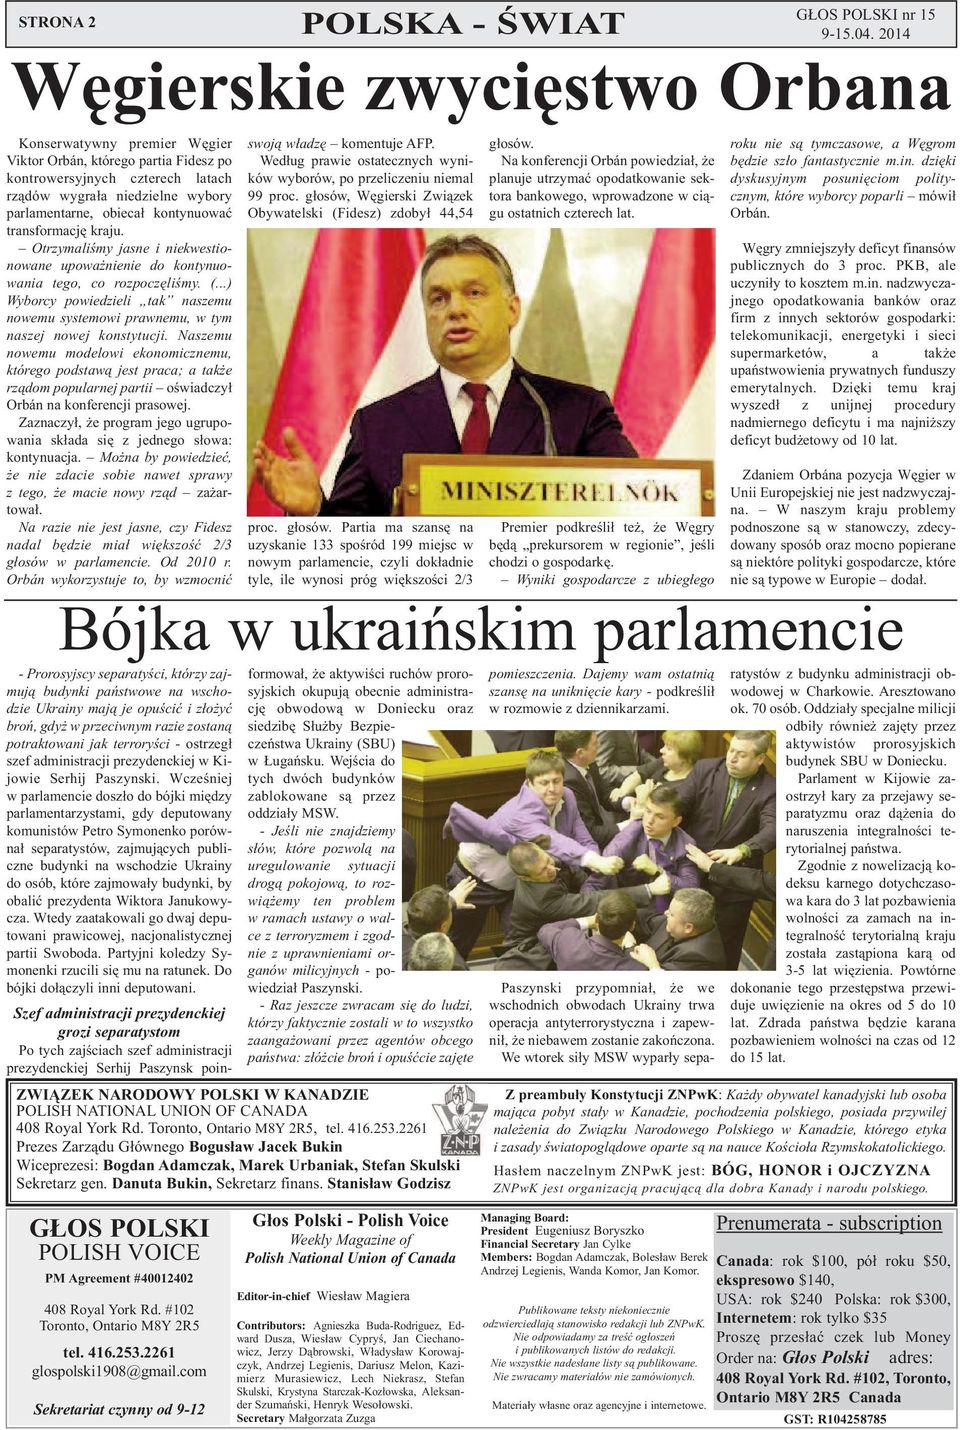 Naszemu nowemu modelowi ekonomicznemu, którego podstawą jest praca; a także rządom popularnej partii oświadczył Orbán na konferencji prasowej.